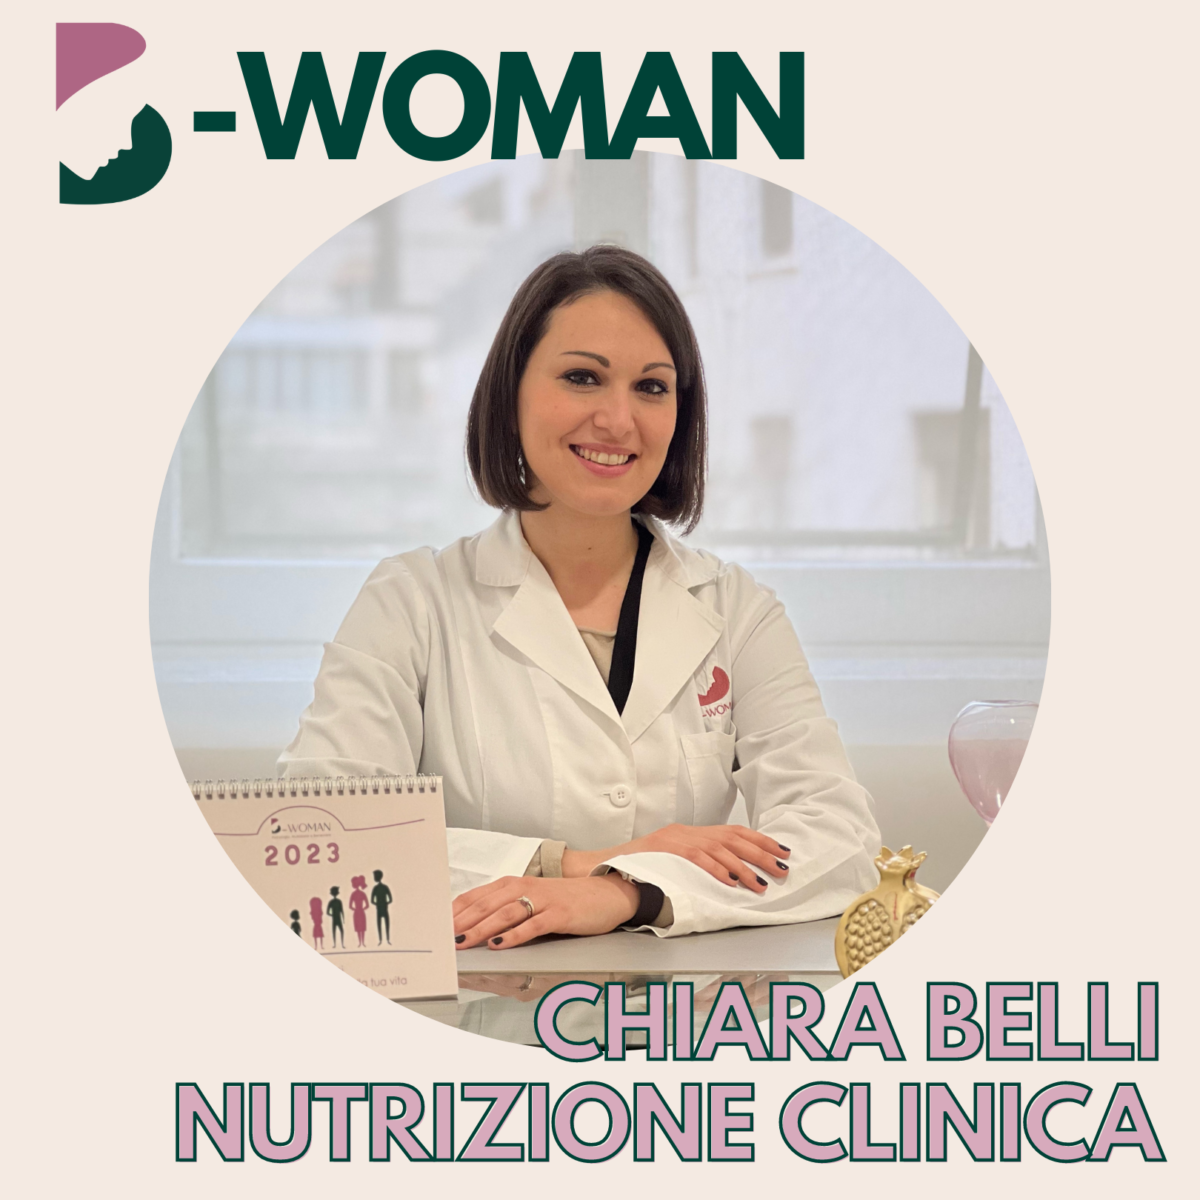 Dr.ssa-Chiara-Belli-Team-nutrizione-clinica-1200x1200.png